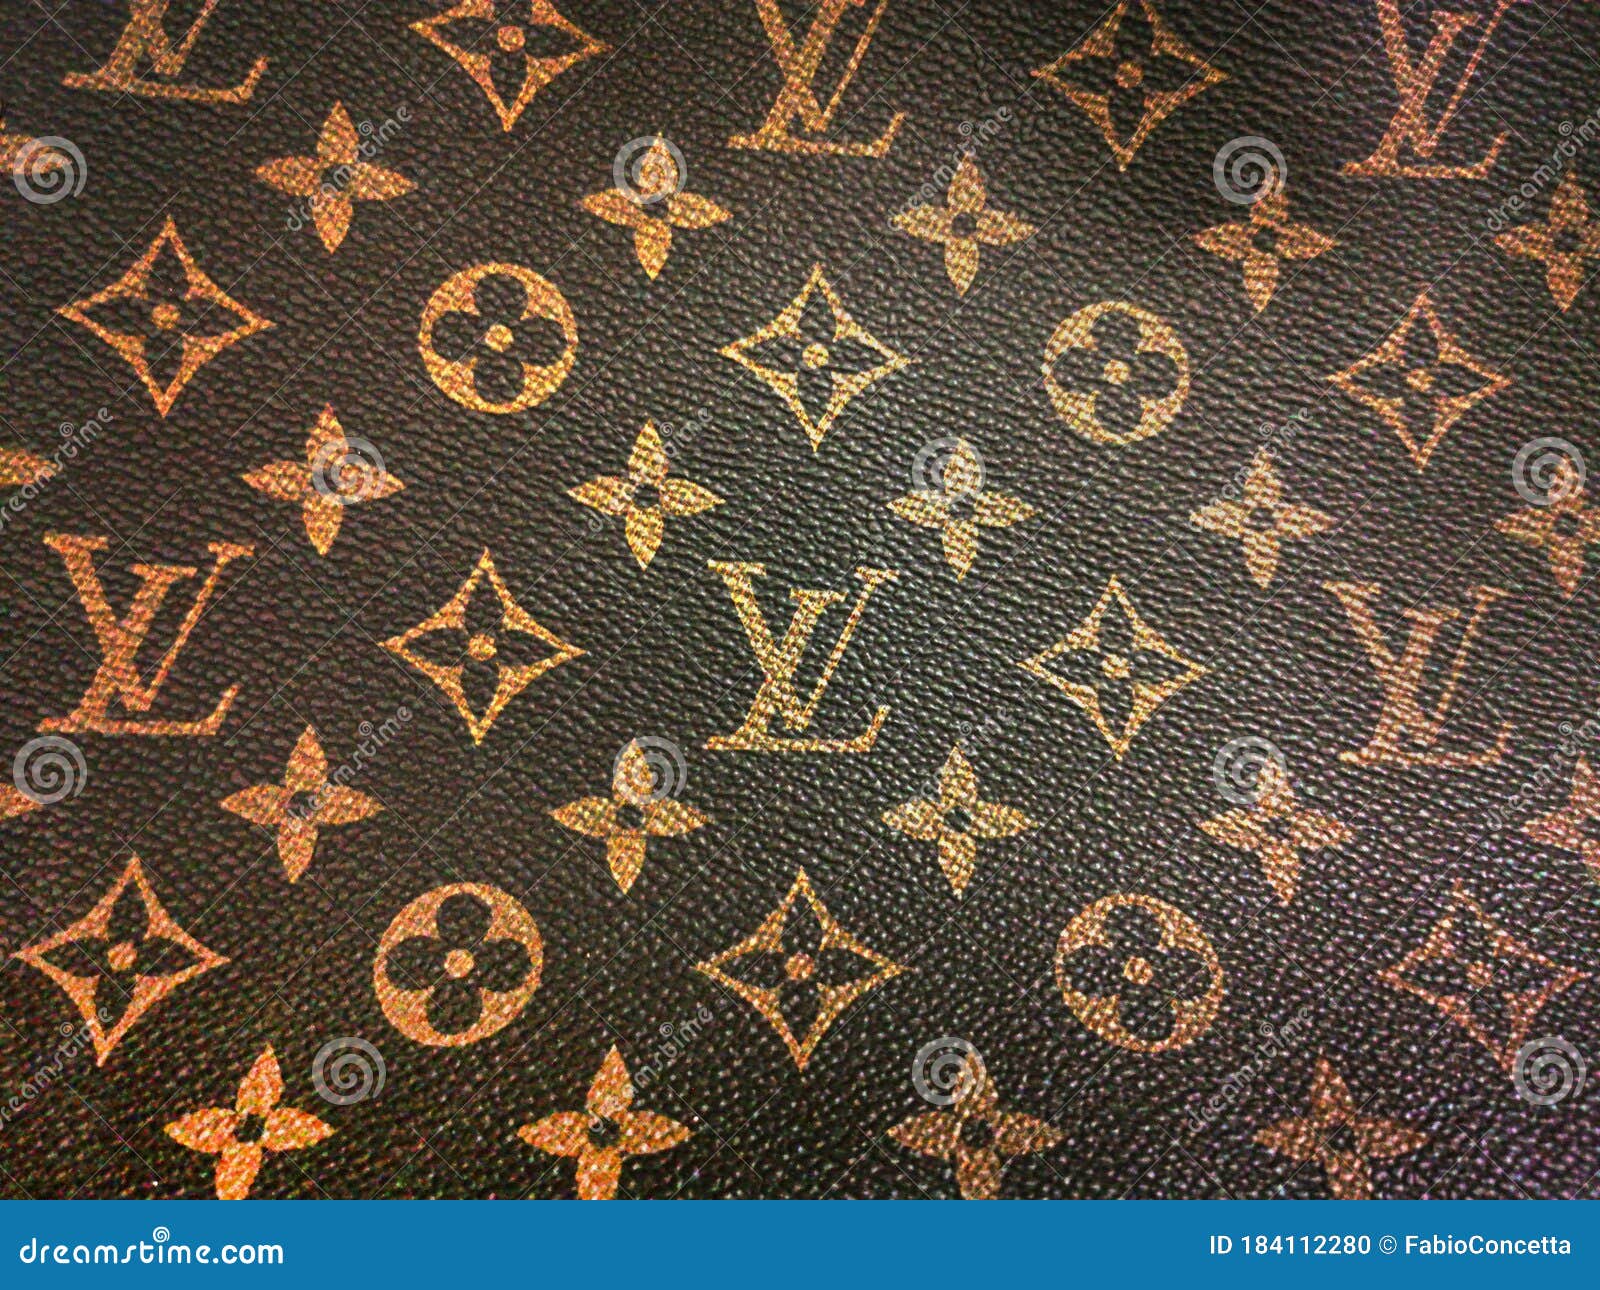 Hintergrund Einer Leder Art Mit Der Marke Louis Vuitton Redaktionelles Bild  - Bild von riemen, luxus: 184112280